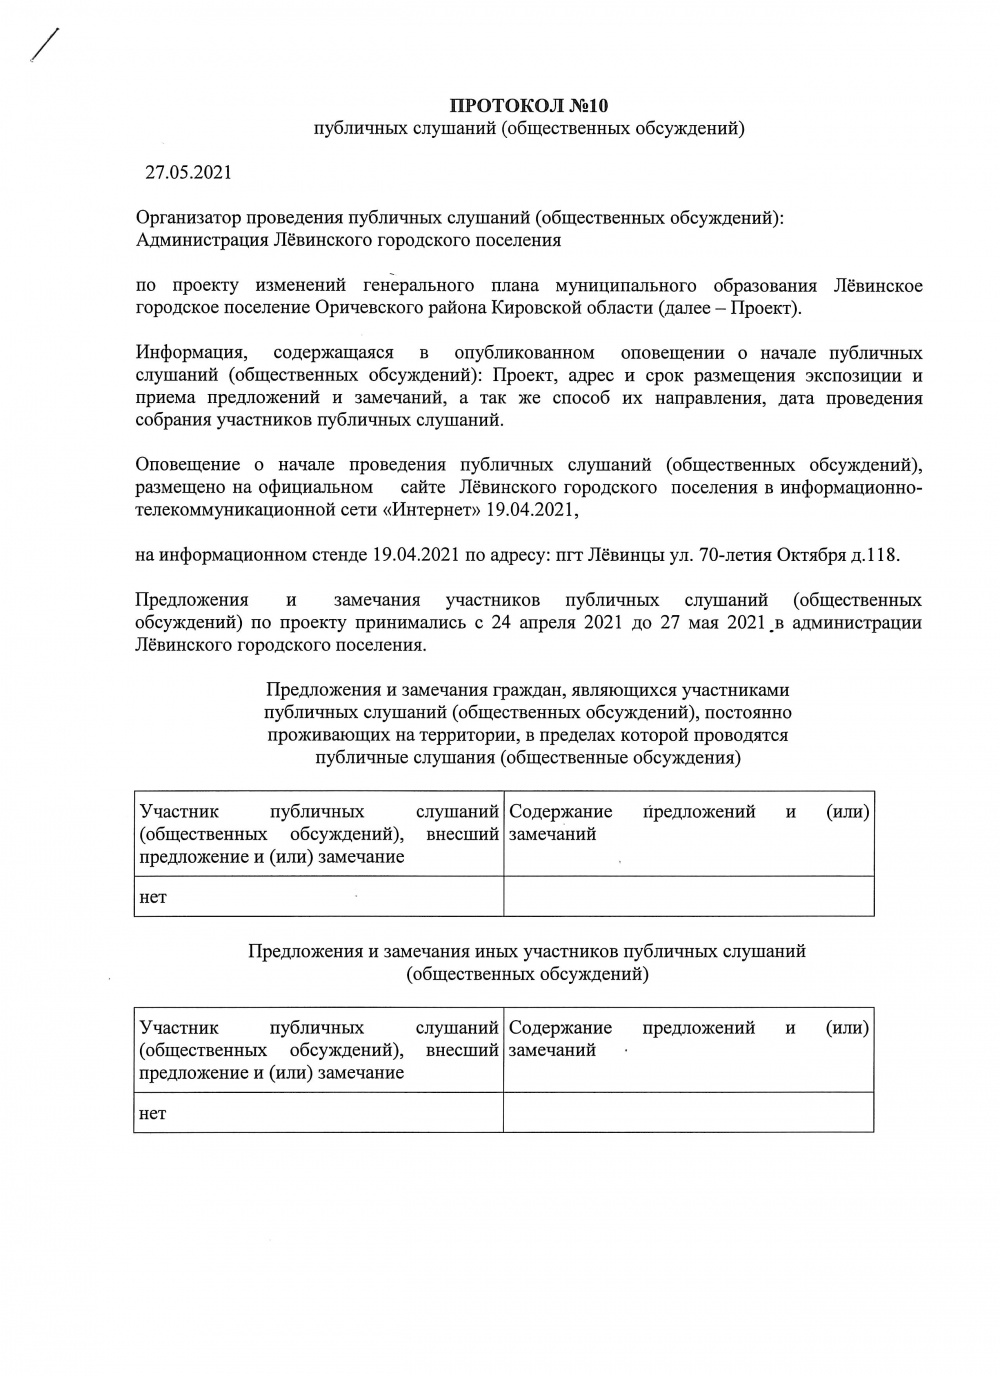 Протокол итогов публичных слушаний по проекту внесения изменений в Генеральный план Лёвинского городского поселения